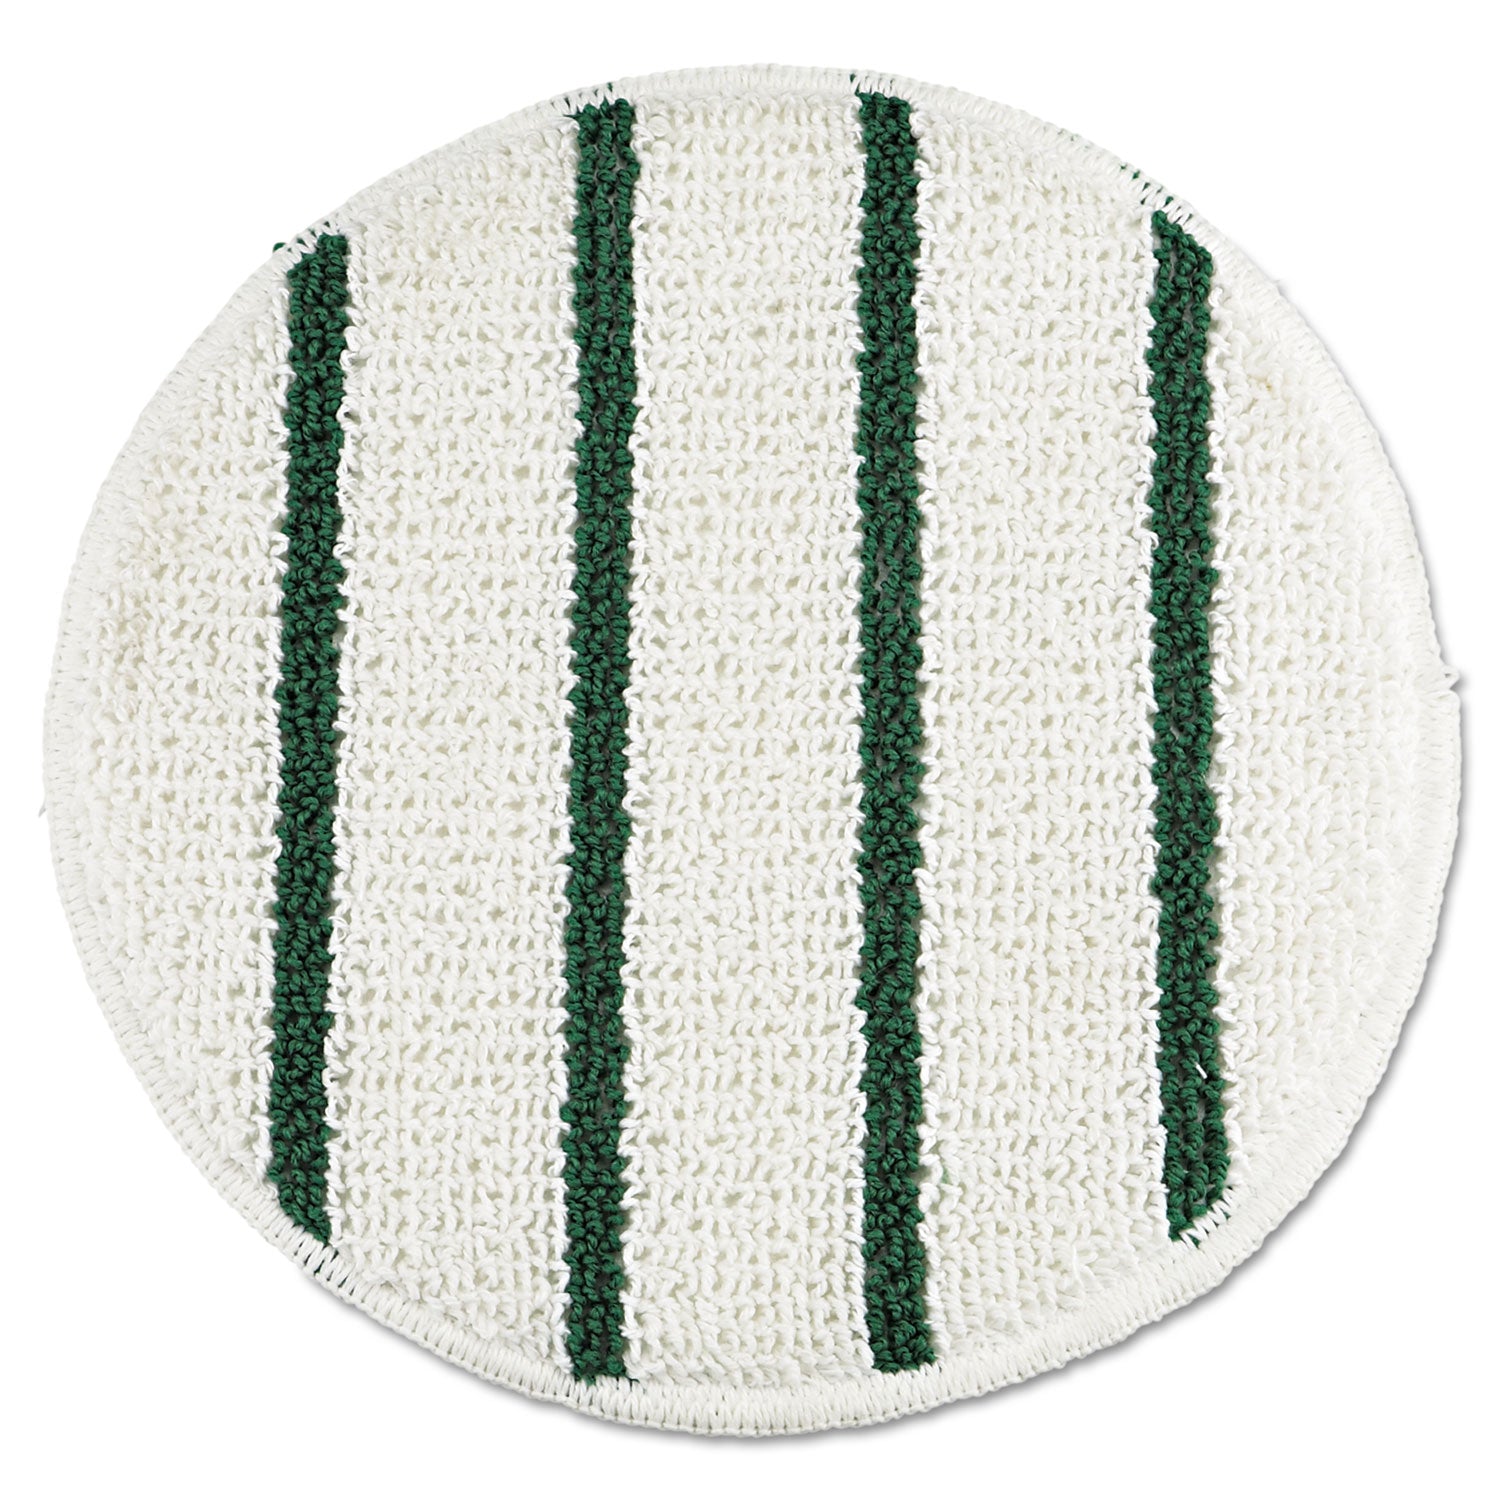 Low Profile Scrub-Strip Carpet Bonnet, 19" Diameter, White/Green, 5/Carton - 